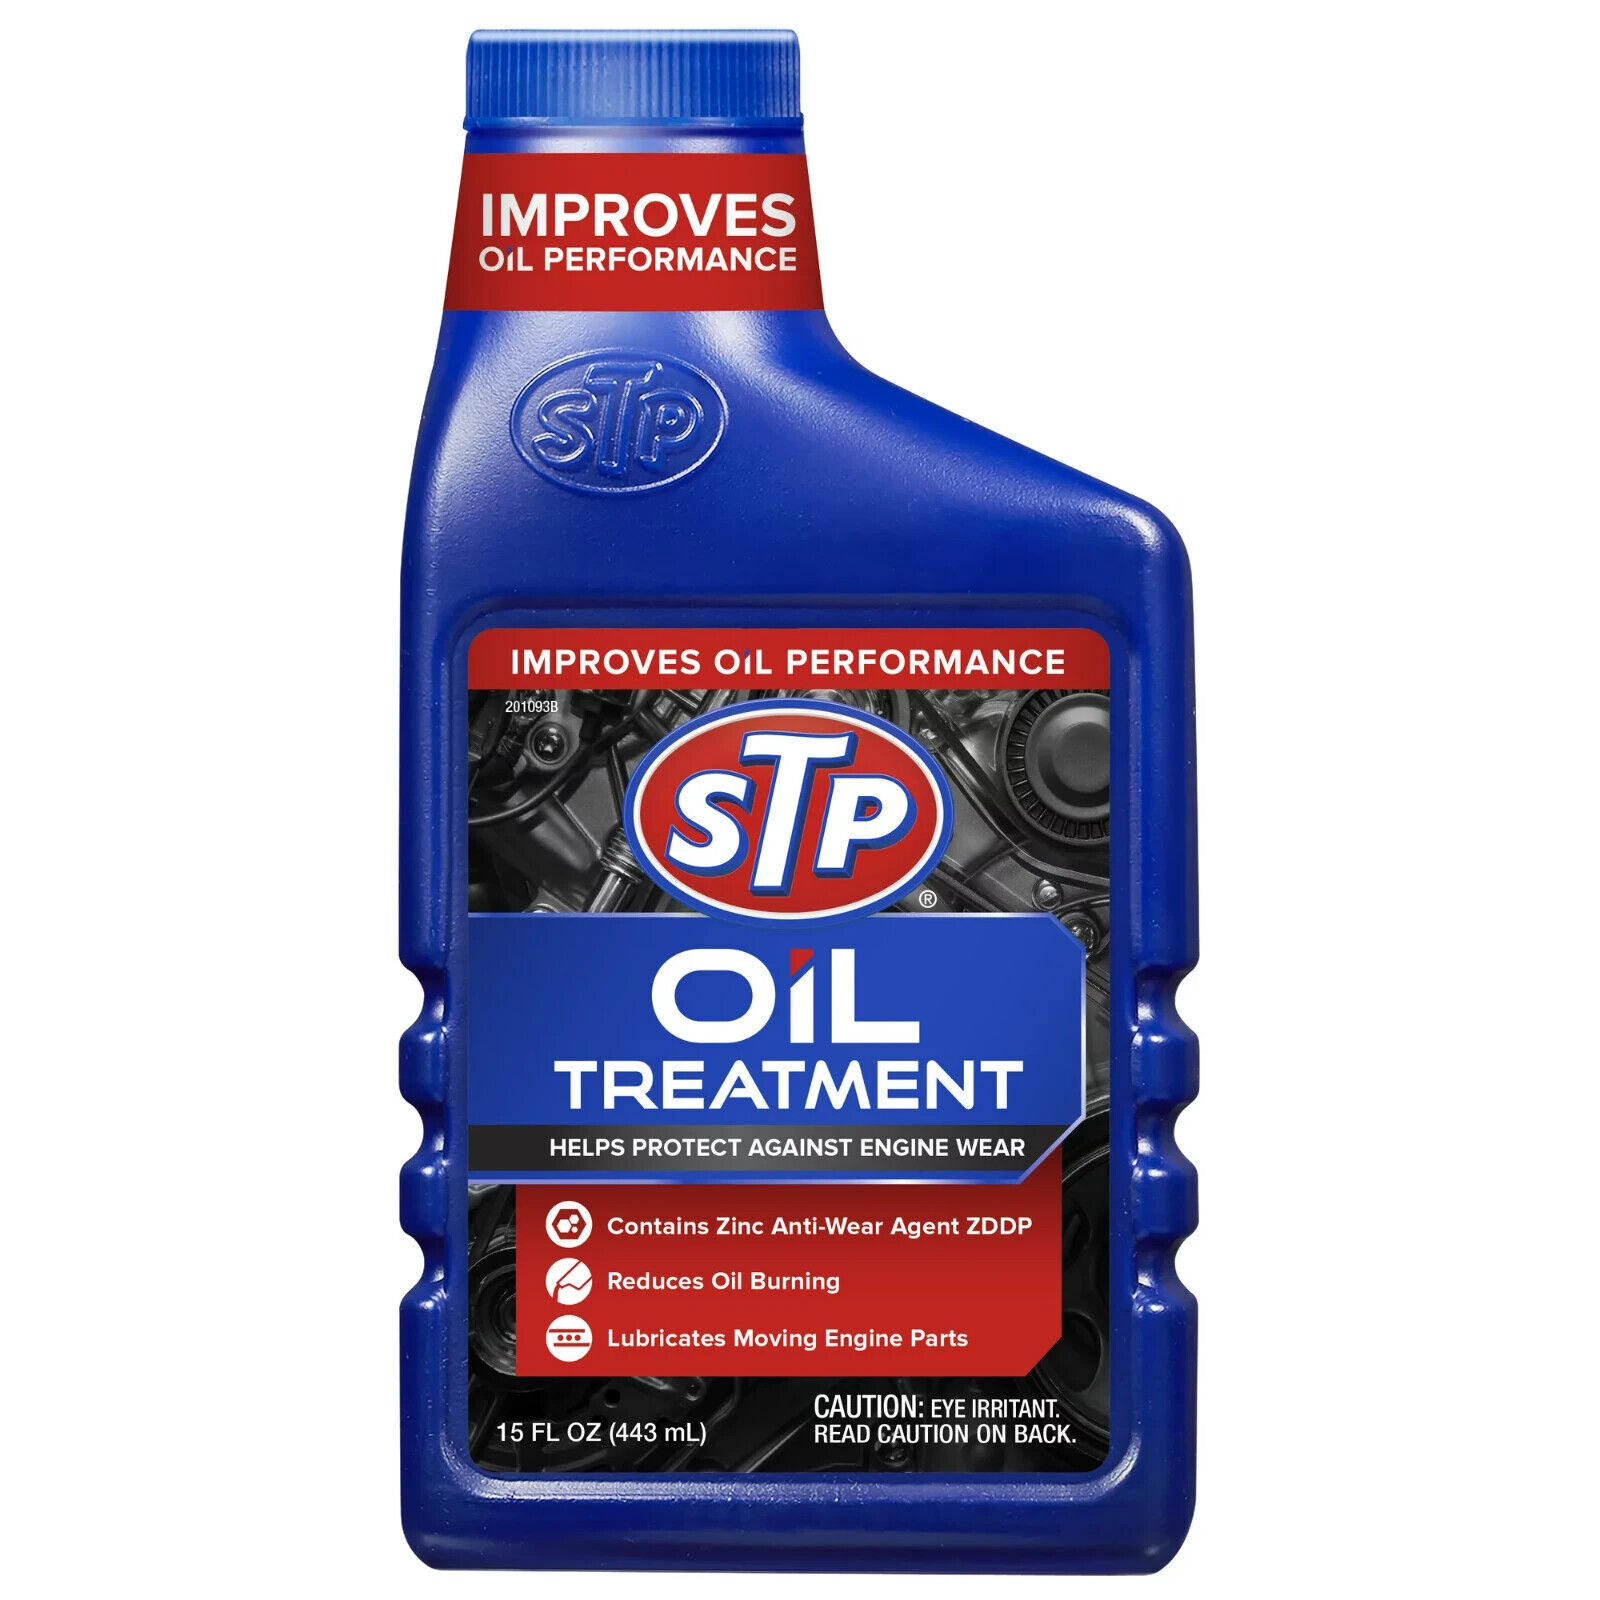 Stp High Viscosity Oil Treatment (15 Fluid Ounces)